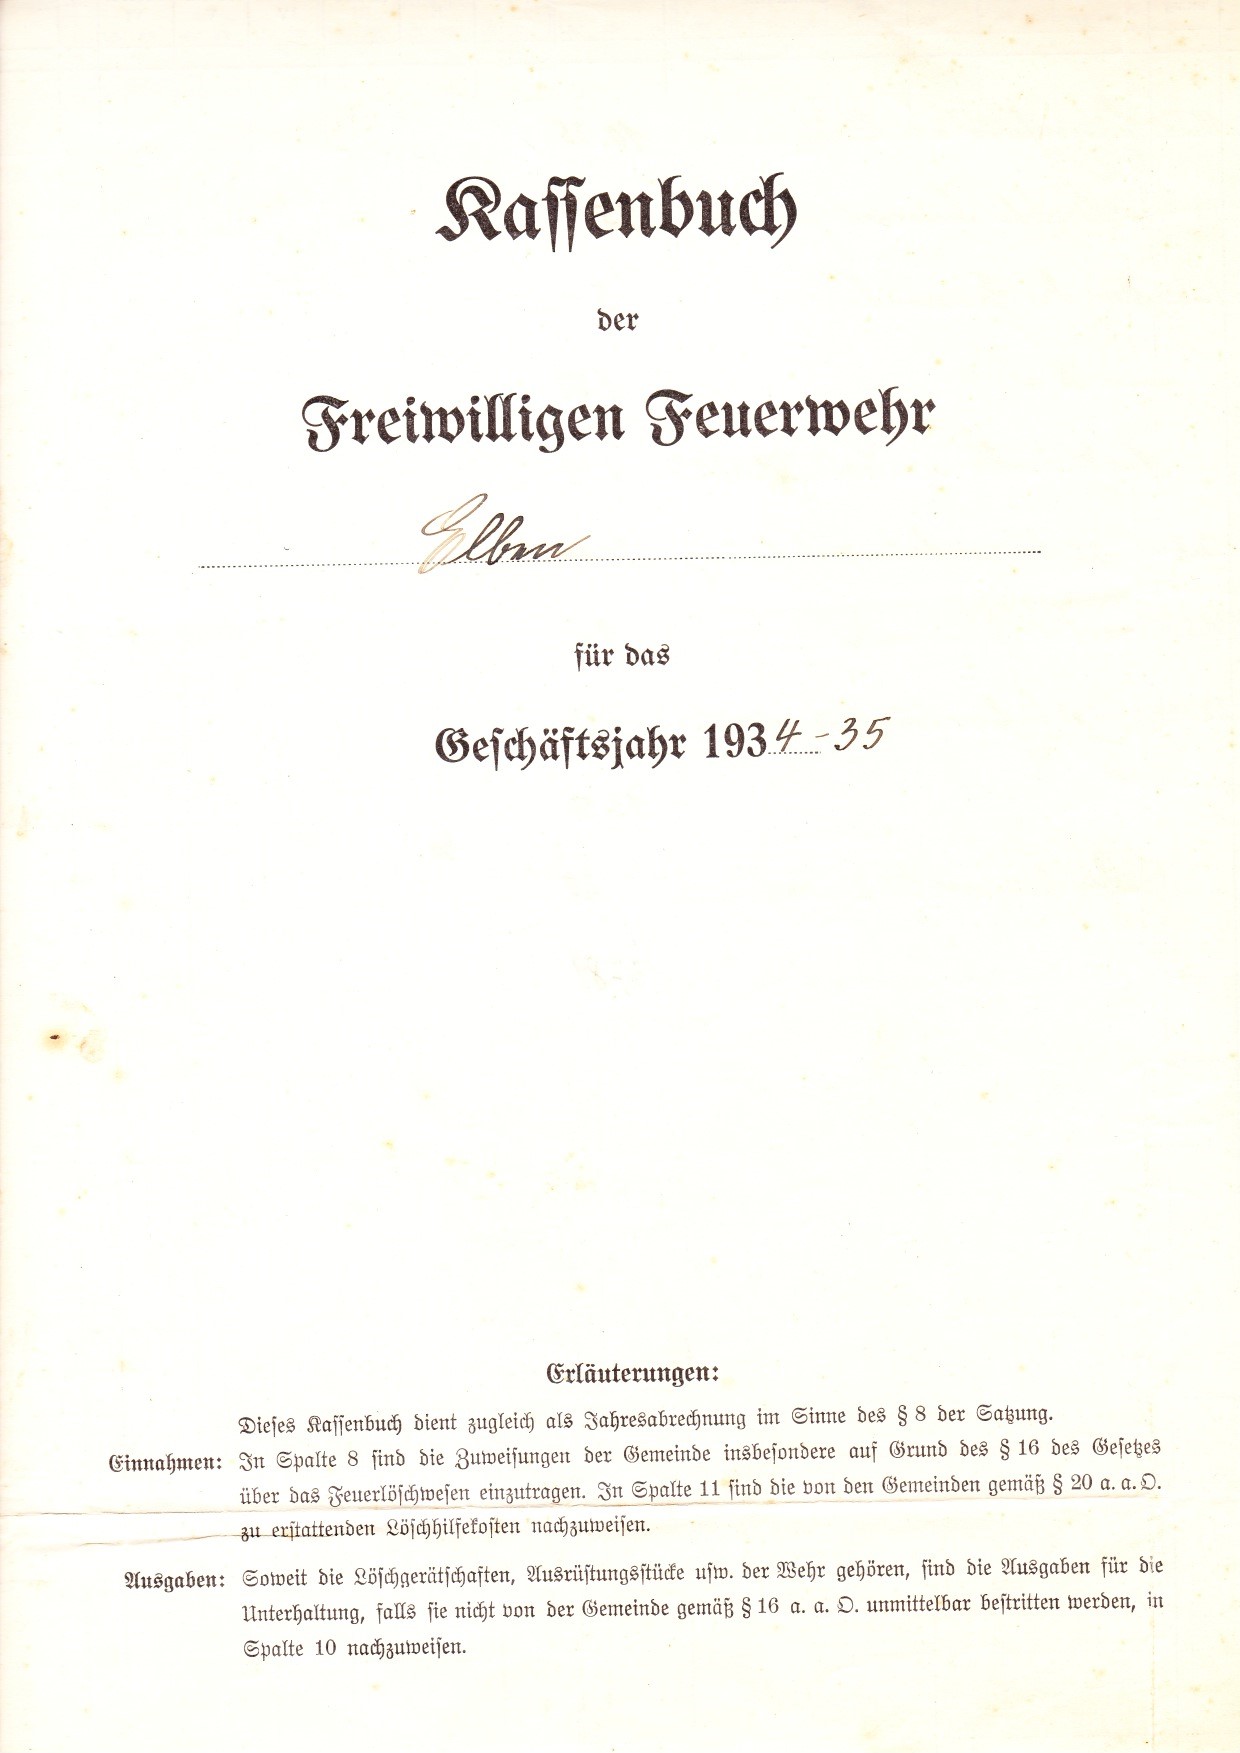 1935 03 24 Kassenbuch Feuerwehr Elben 1934 1935 a